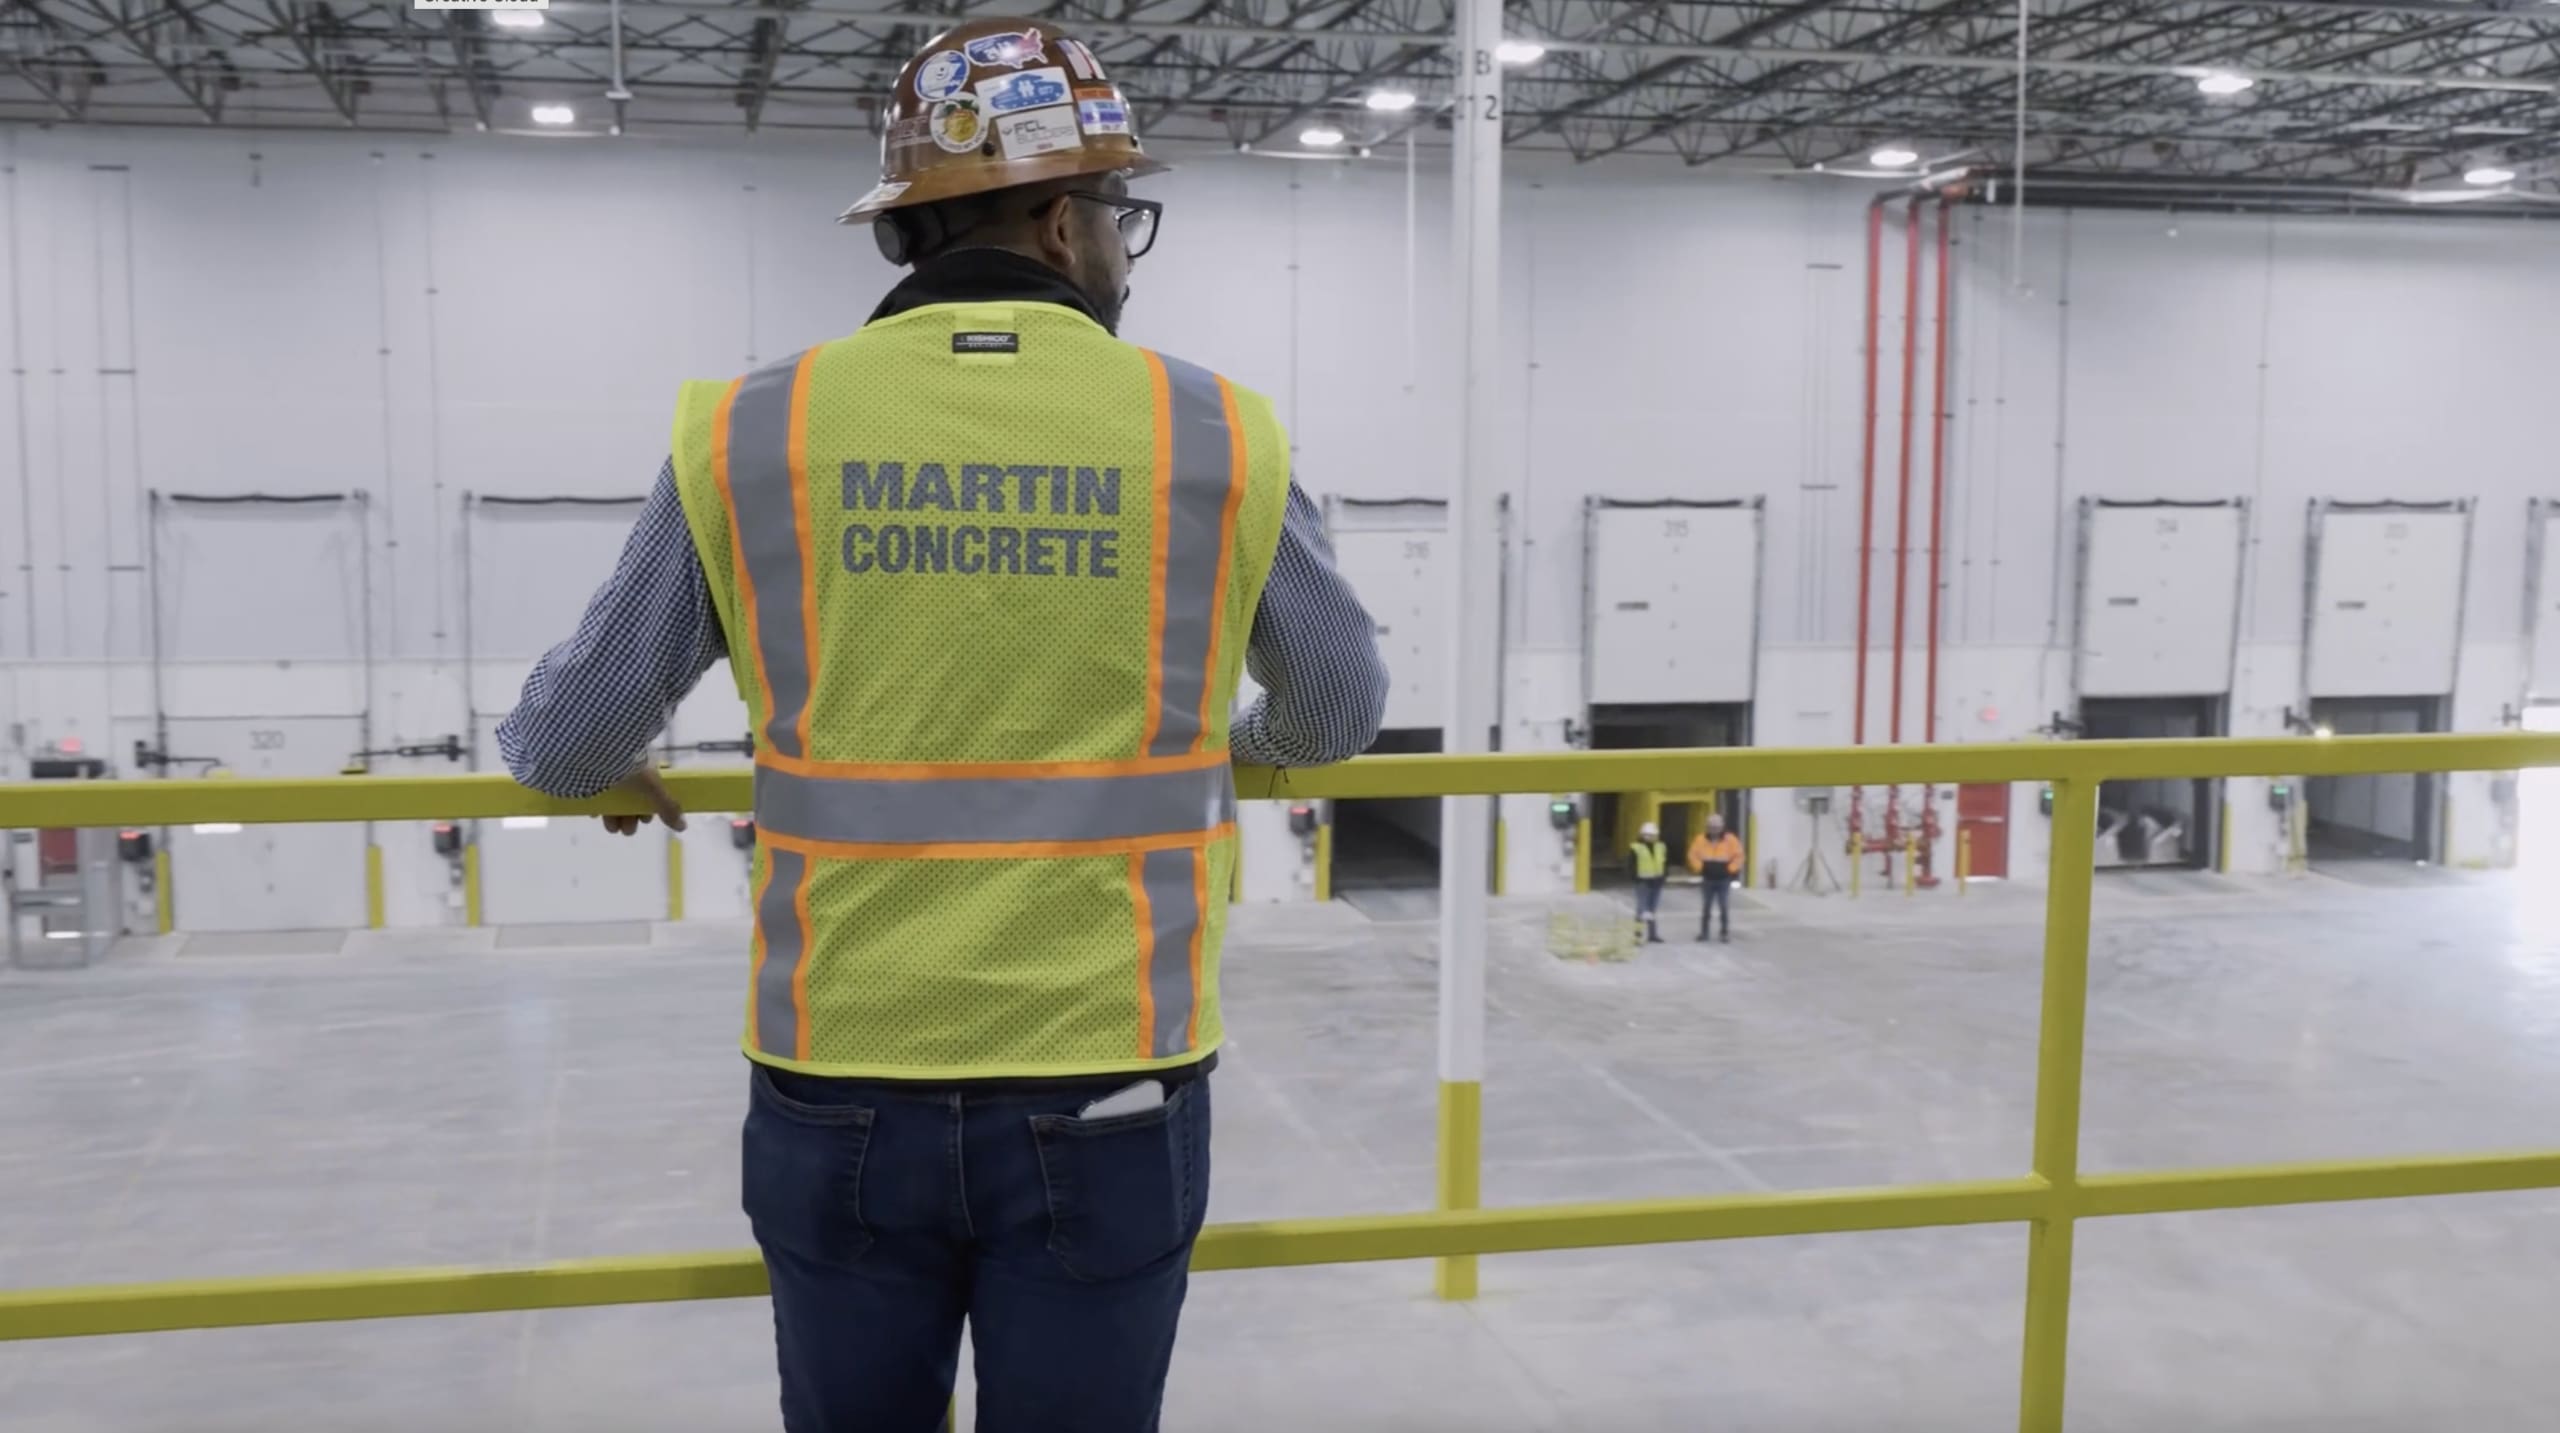  Martin Concrete Construction: Premier Choice Among Concrete Construction Companies